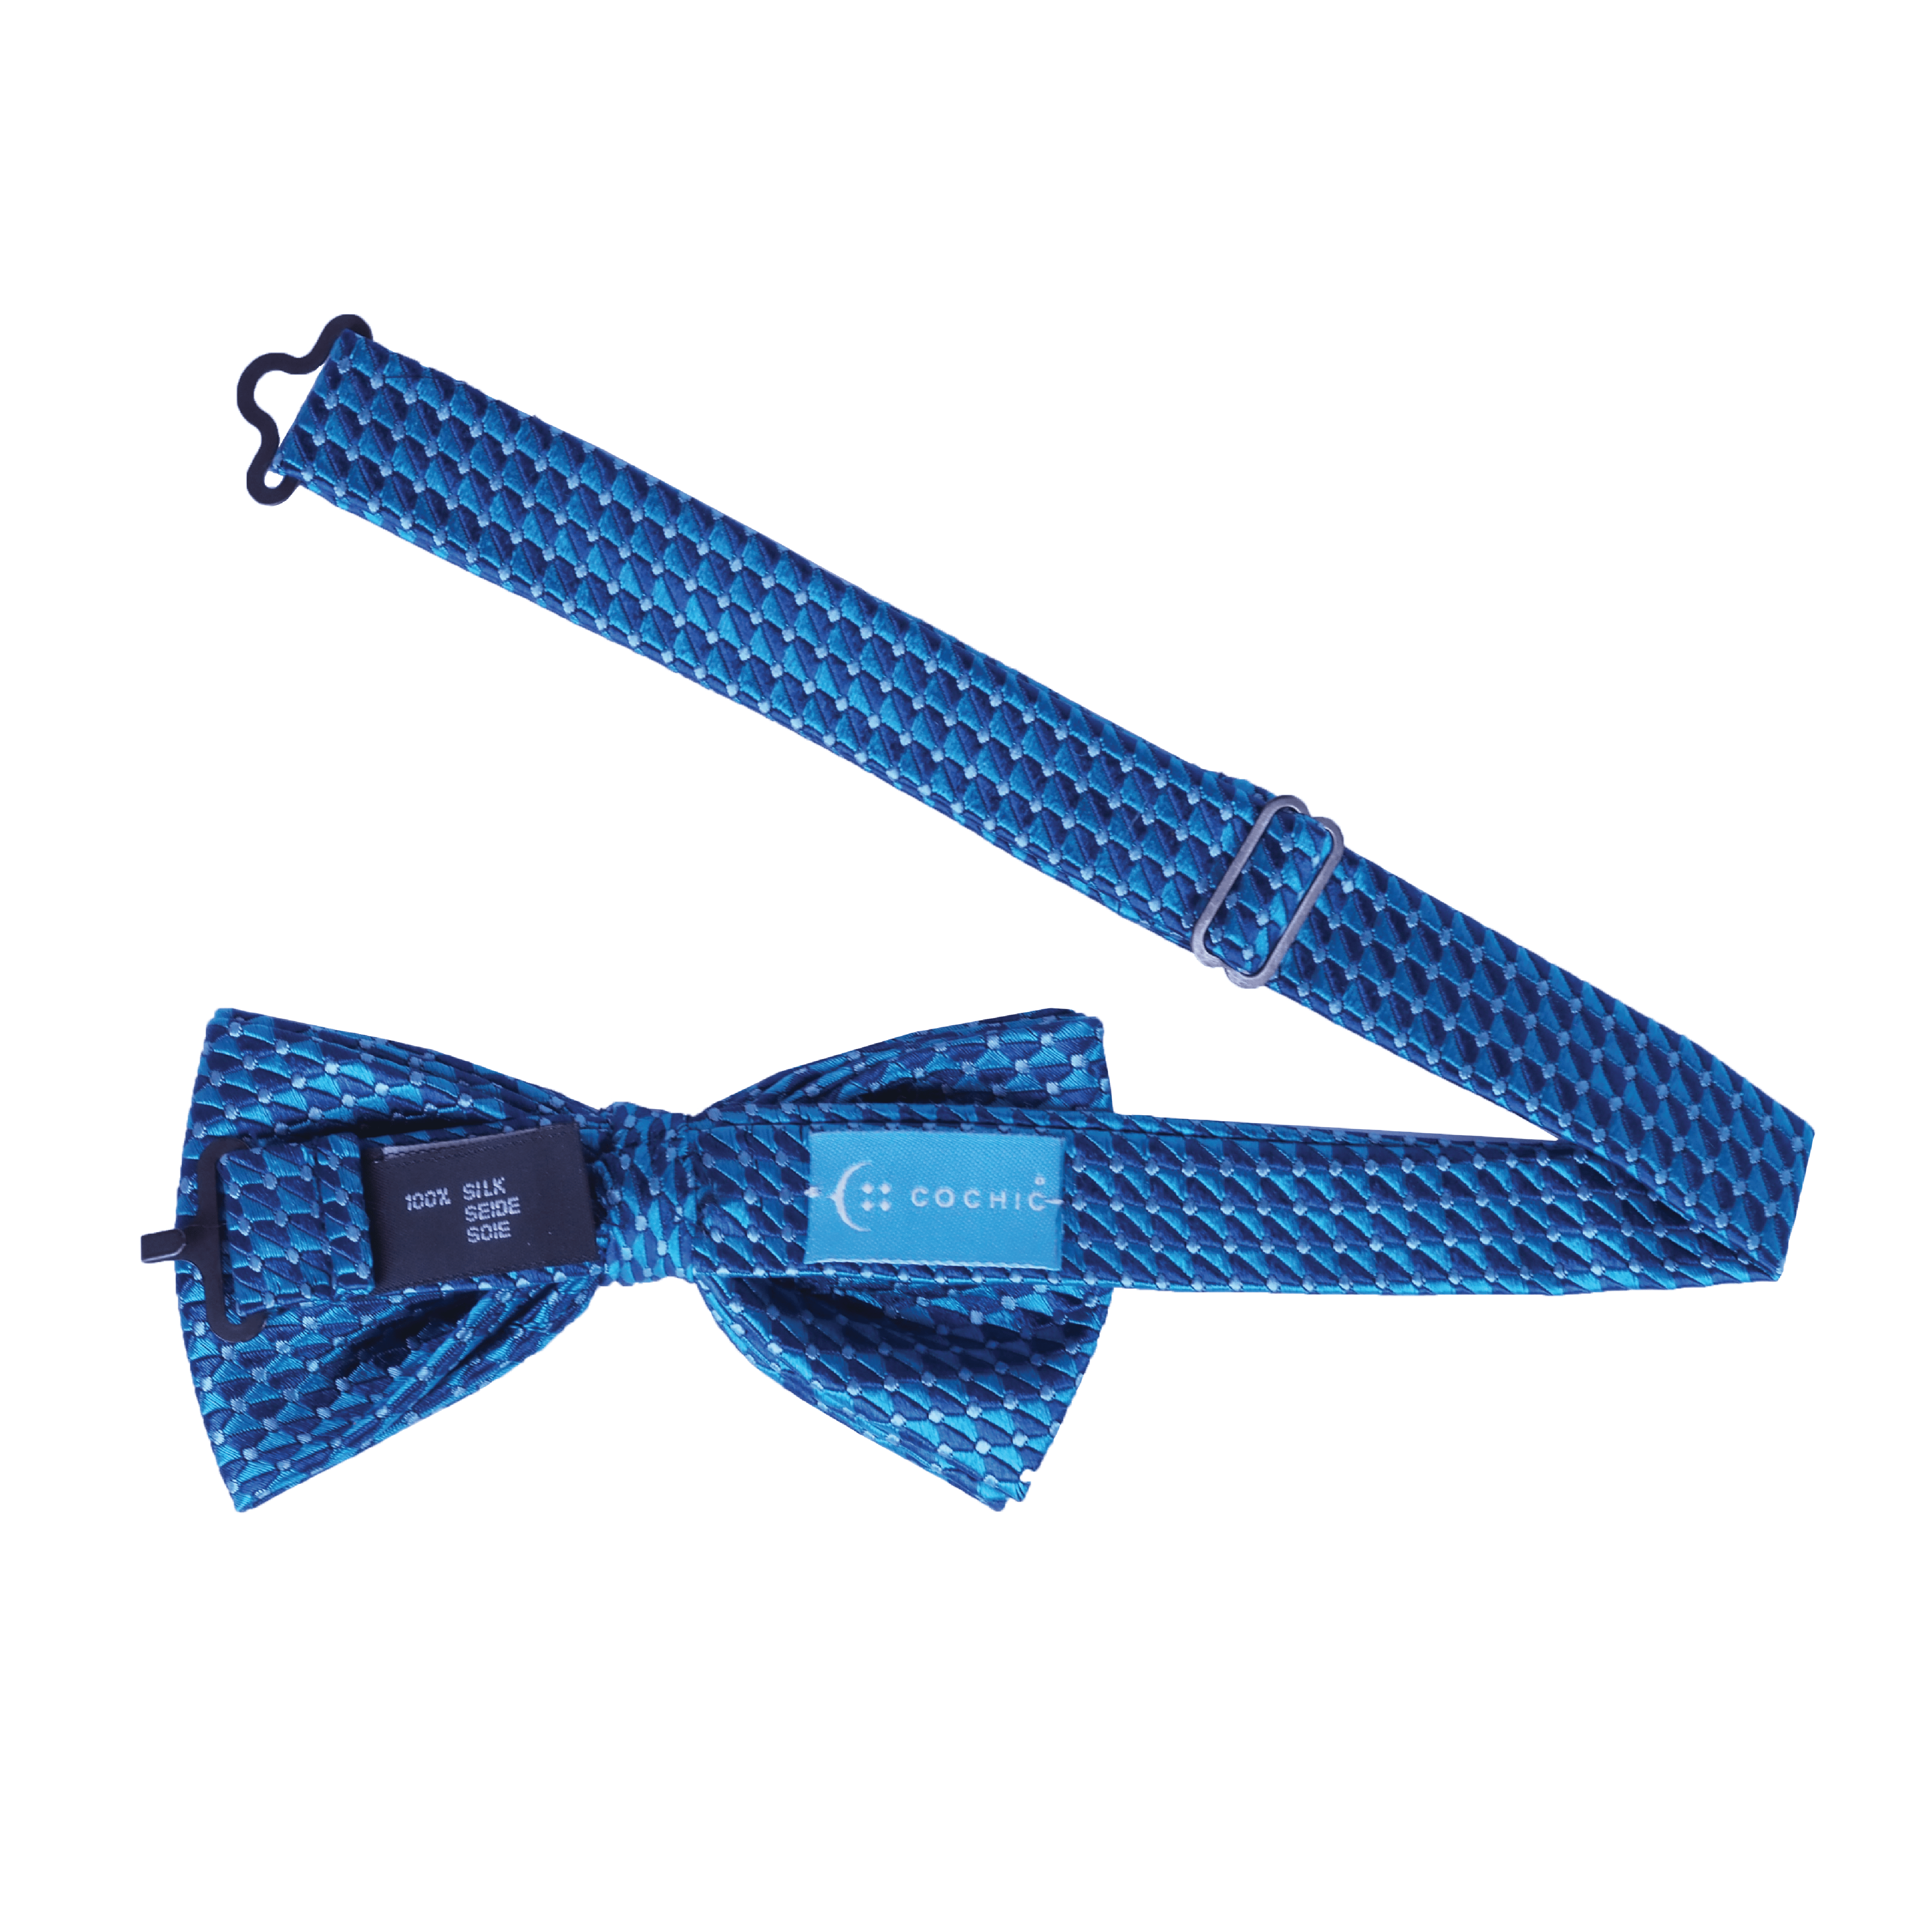 Sailor's Edge Bow Tie (100% Silk)